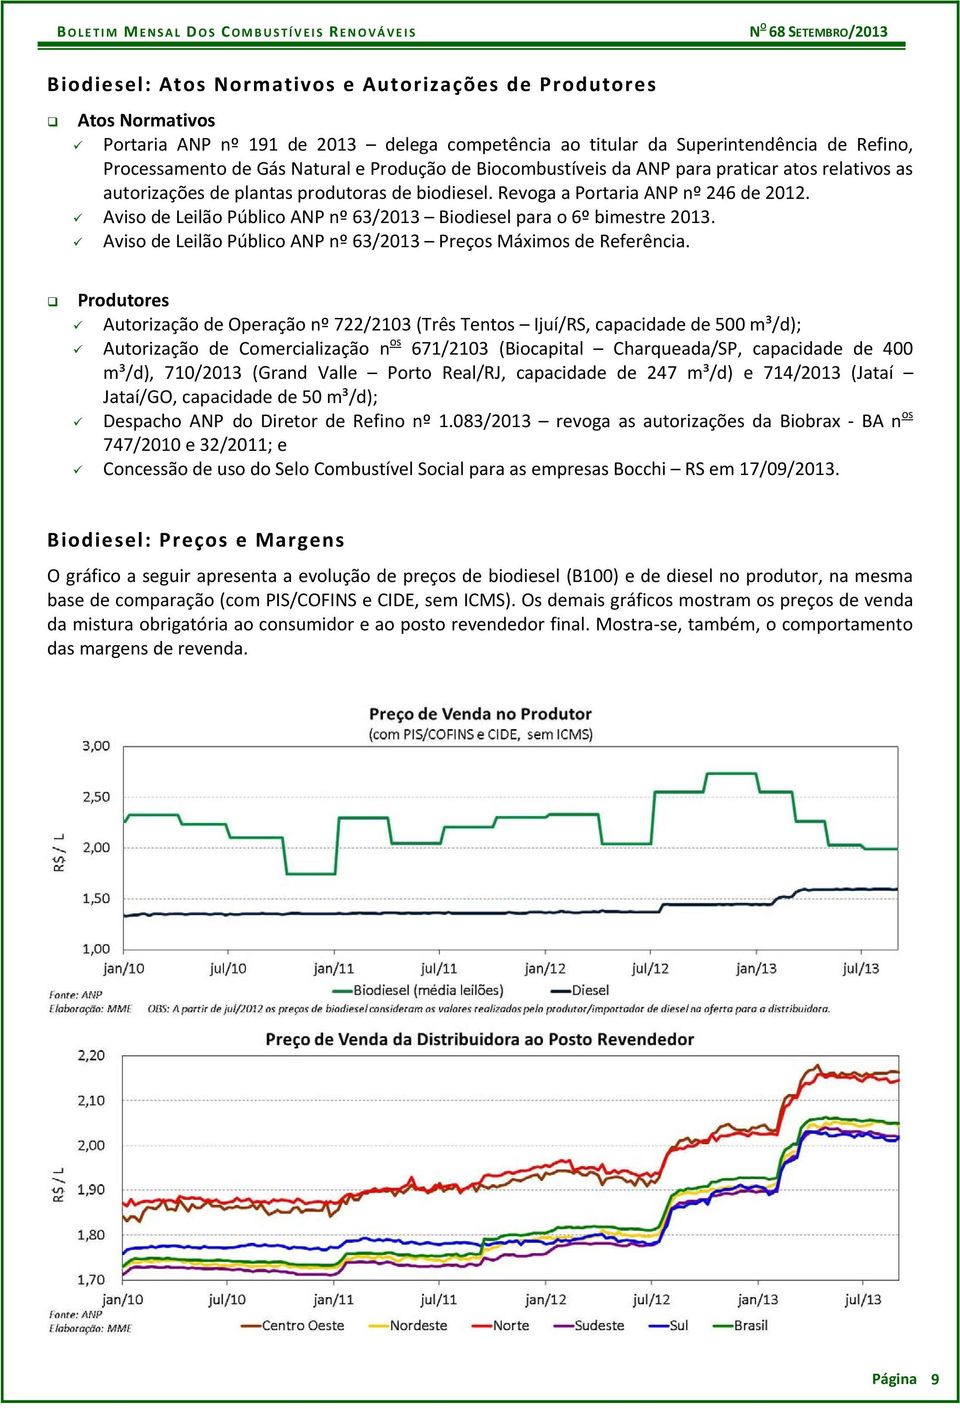 Aviso de Leilão Público ANP nº 63/2013 Biodiesel para o 6º bimestre 2013. Aviso de Leilão Público ANP nº 63/2013 Preços Máximos de Referência.